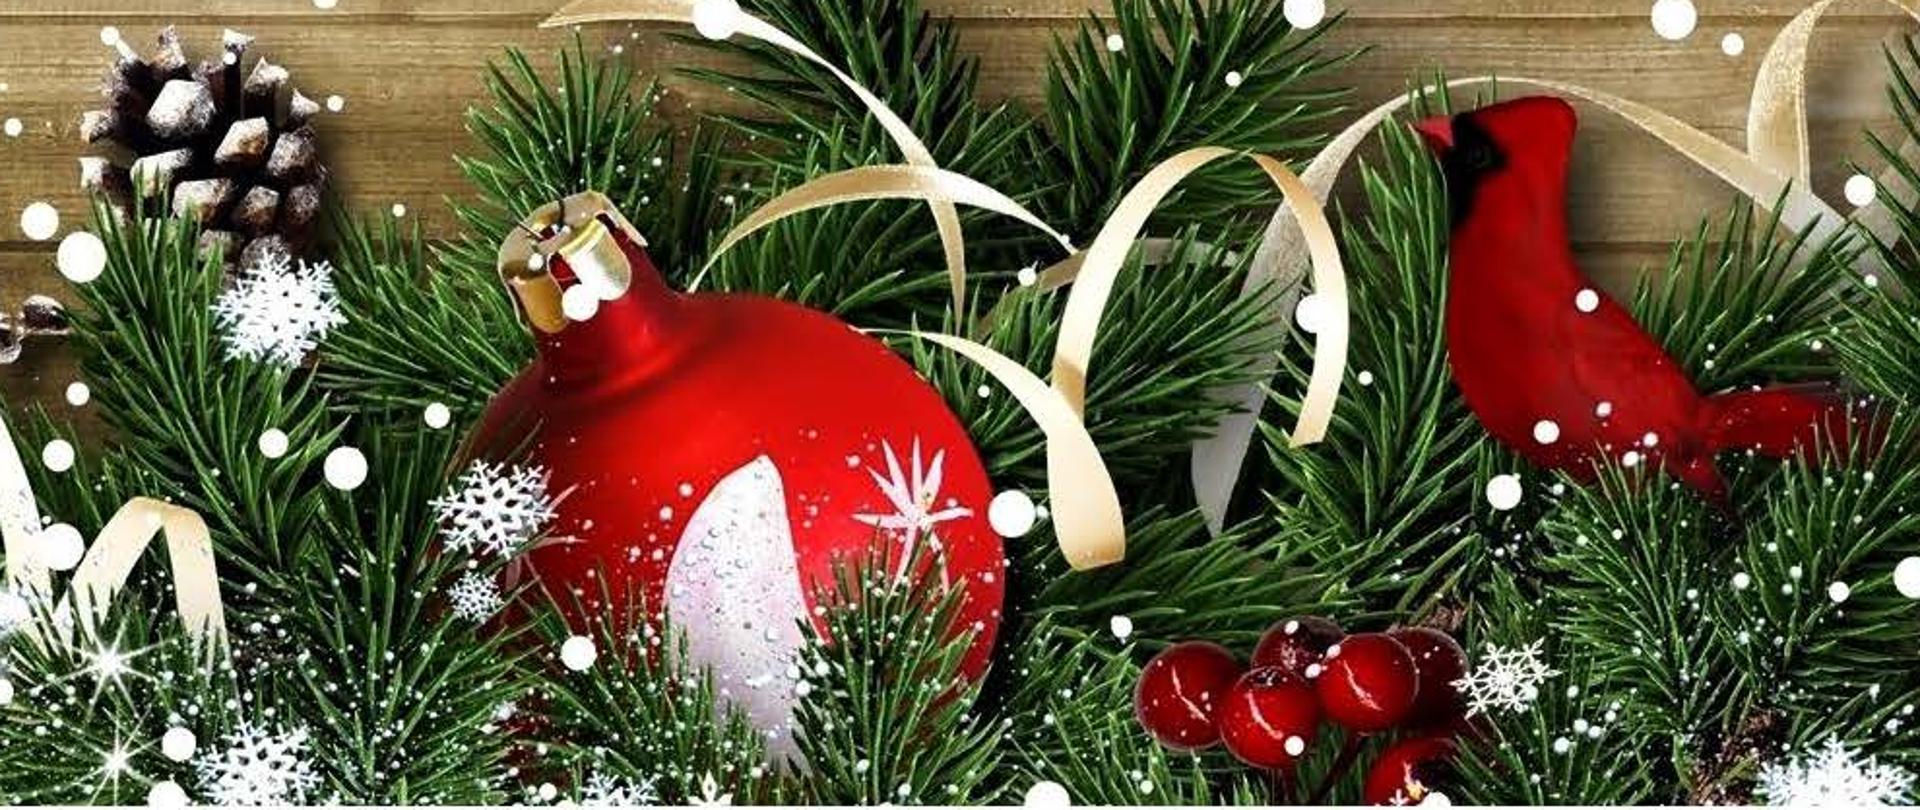 Zdrowych i spokojnych
Świąt Bożego Narodzenia,
Pełnych spokoju i rodzinnego ciepła,
a także wielu szczęśliwych chwil,
sukcesów i pomyślności w Nowym Roku
